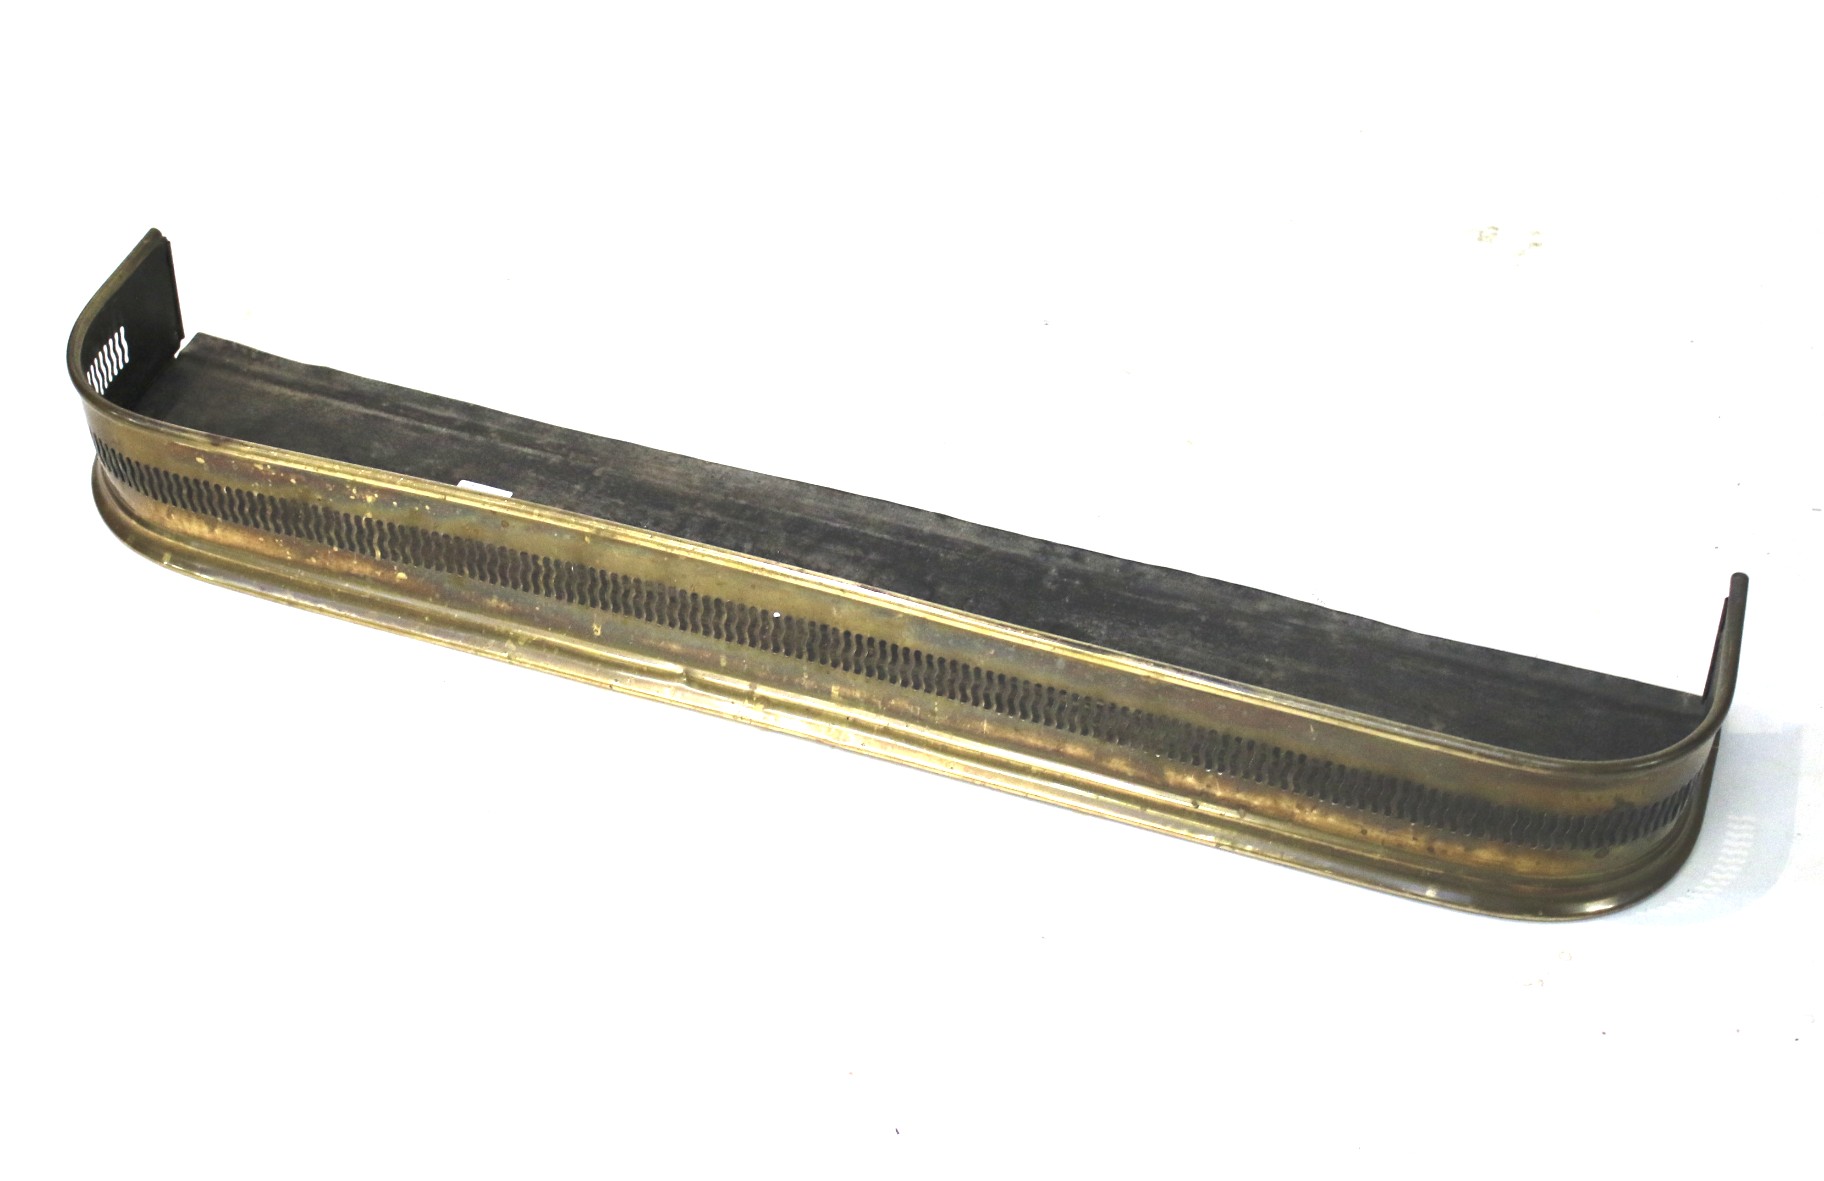 A 20th century brass fender.